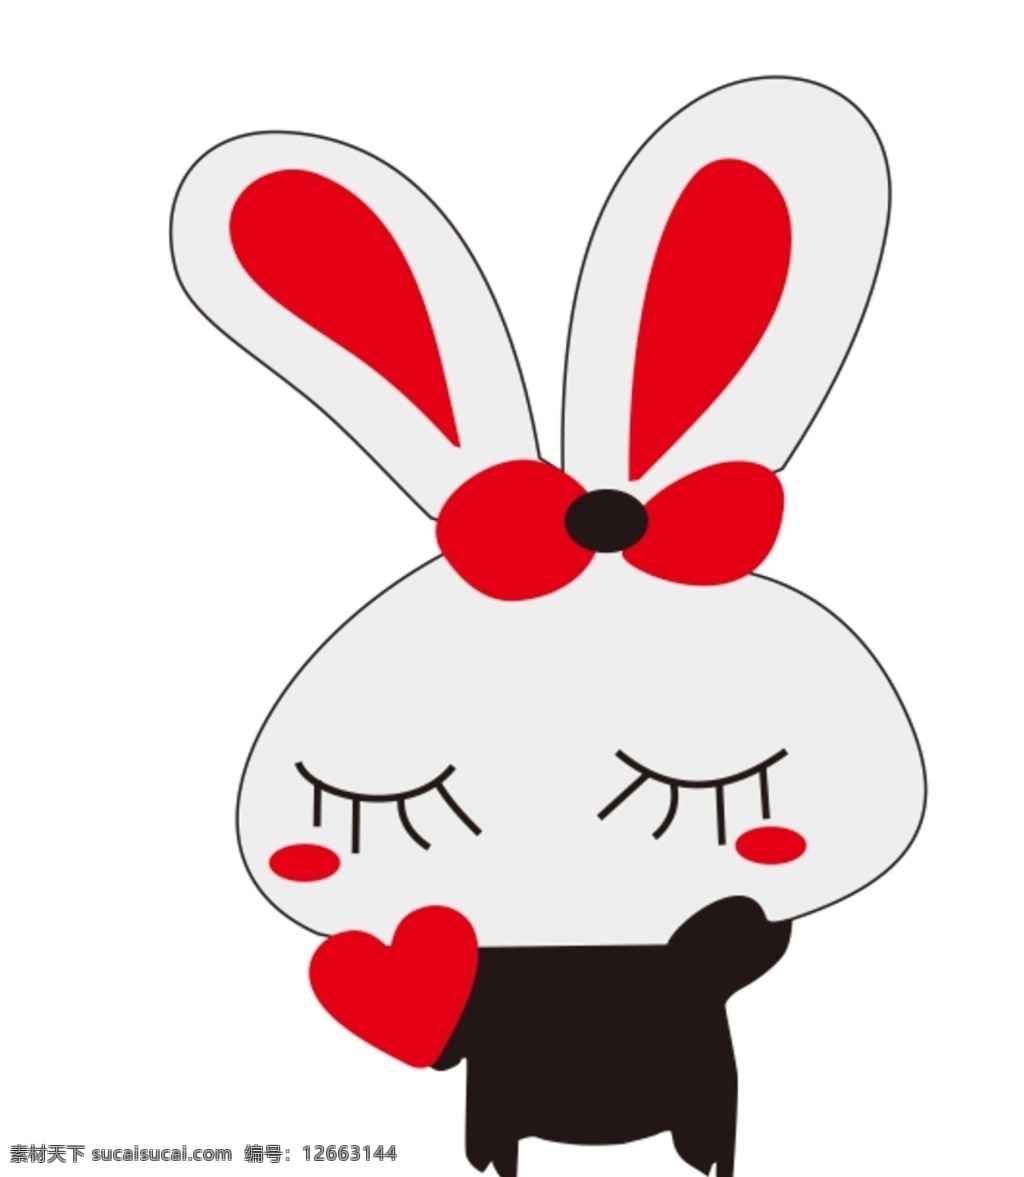 卡通兔 爱心兔 黑兔 兔子 简笔兔 矢量兔 简约兔子 动漫动画